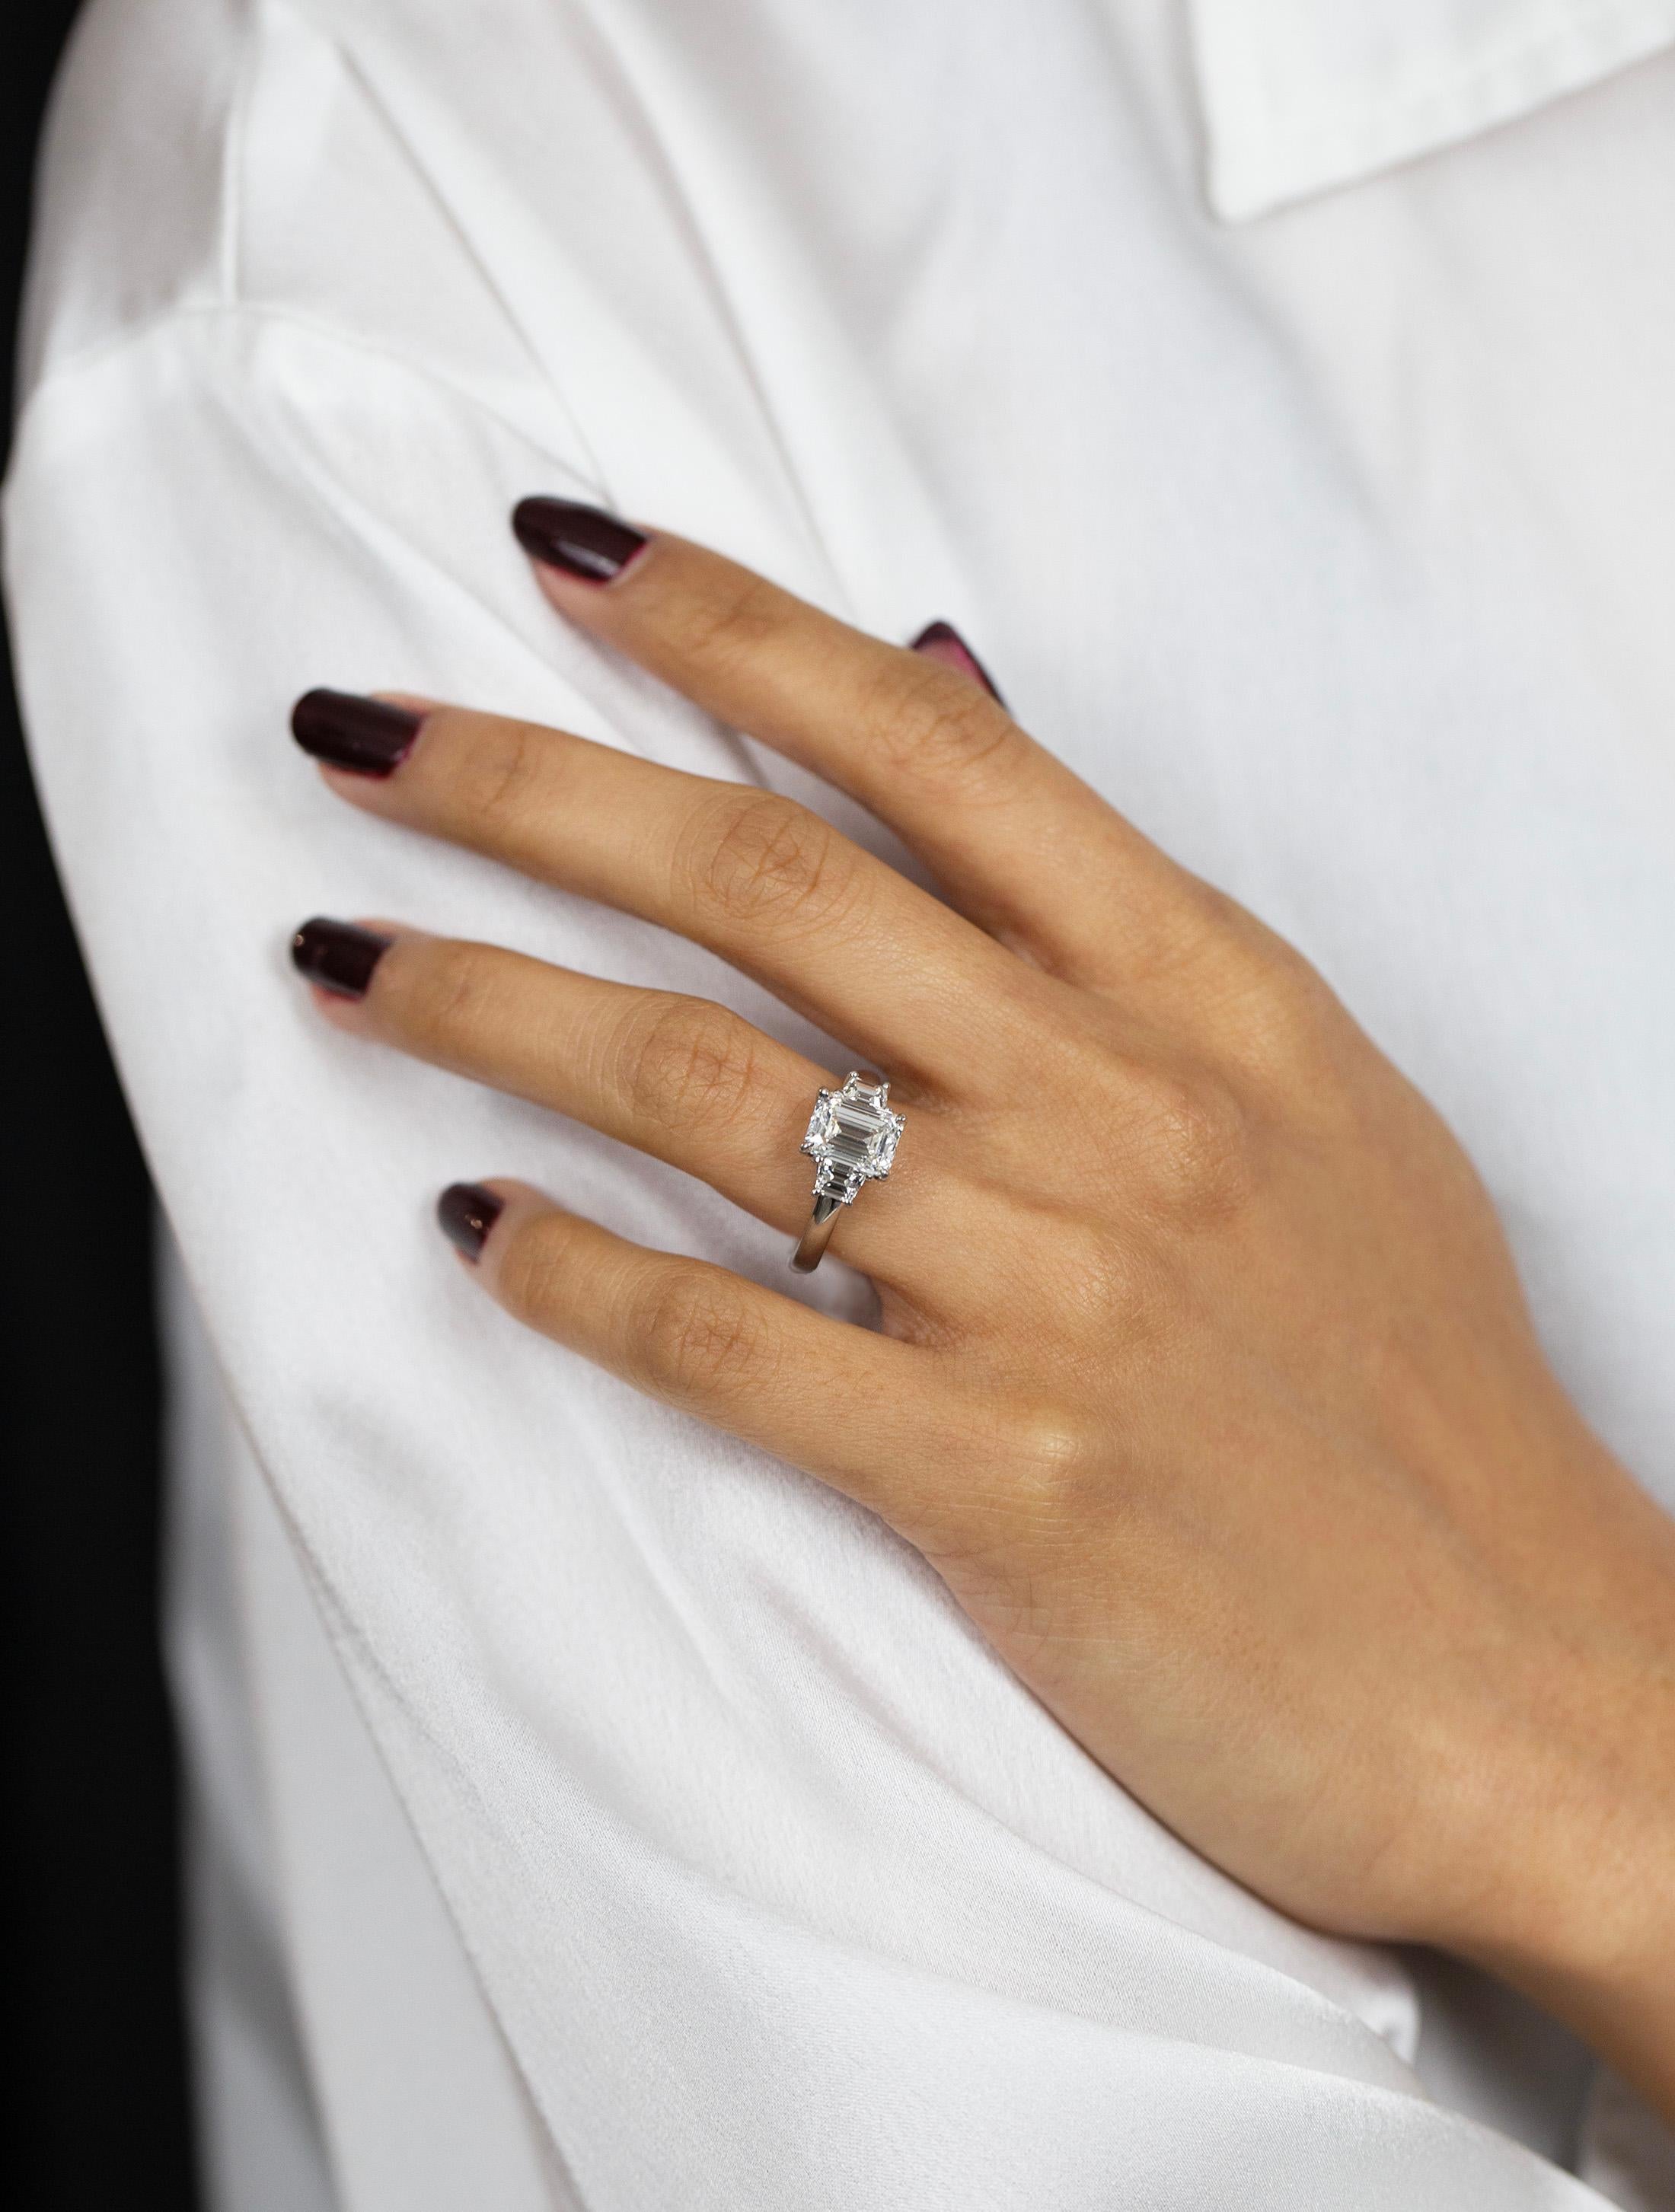 exquisite diamond ring set